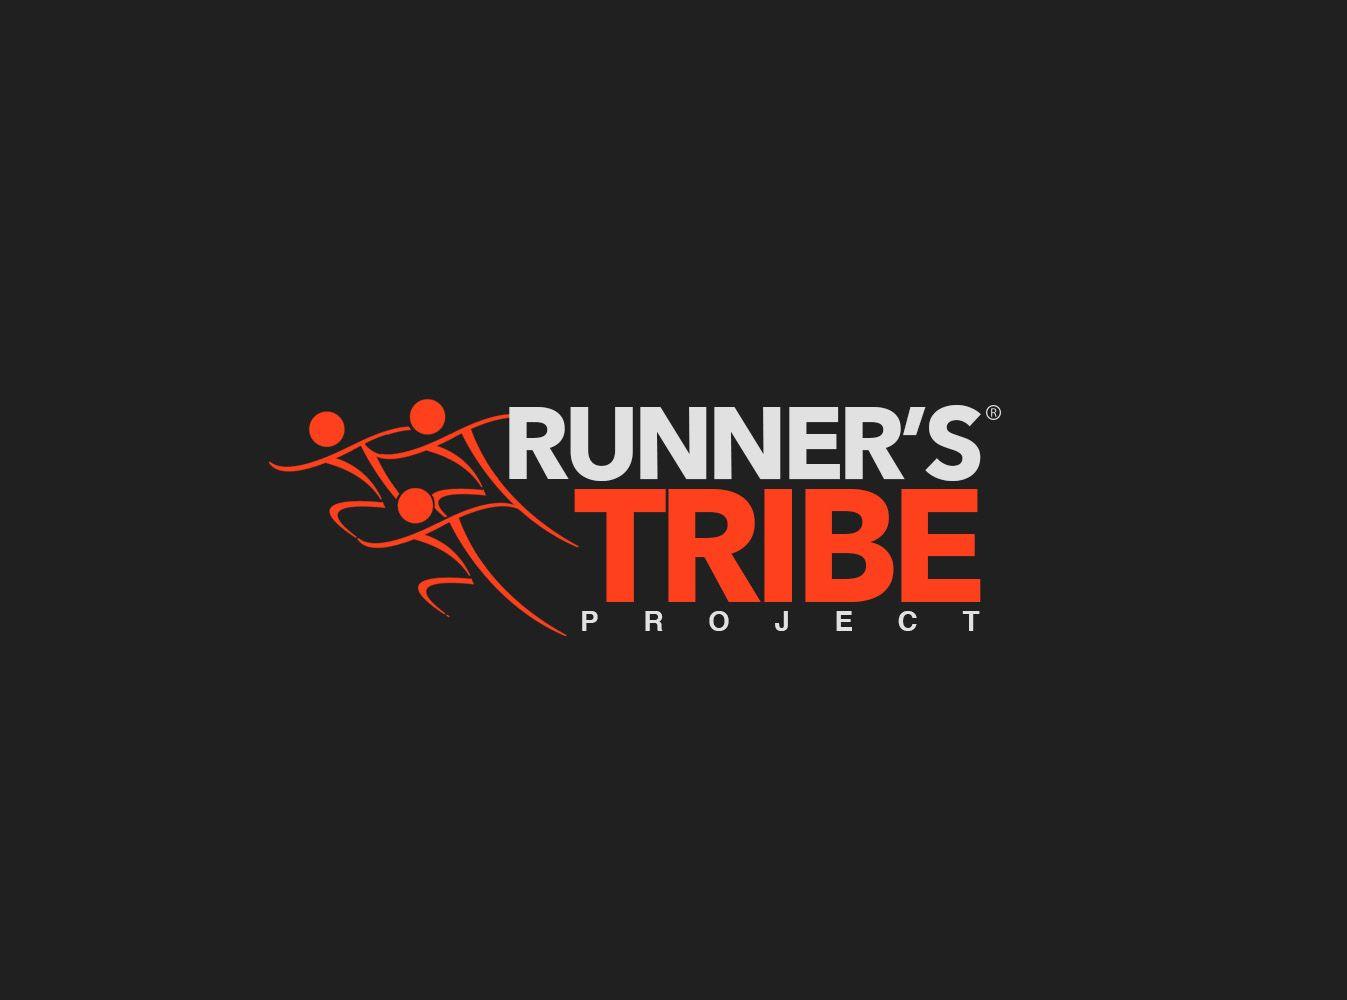 Avago Logo - Elegant, Playful, Sporting Good Logo Design for RUNNER'S TRIBE